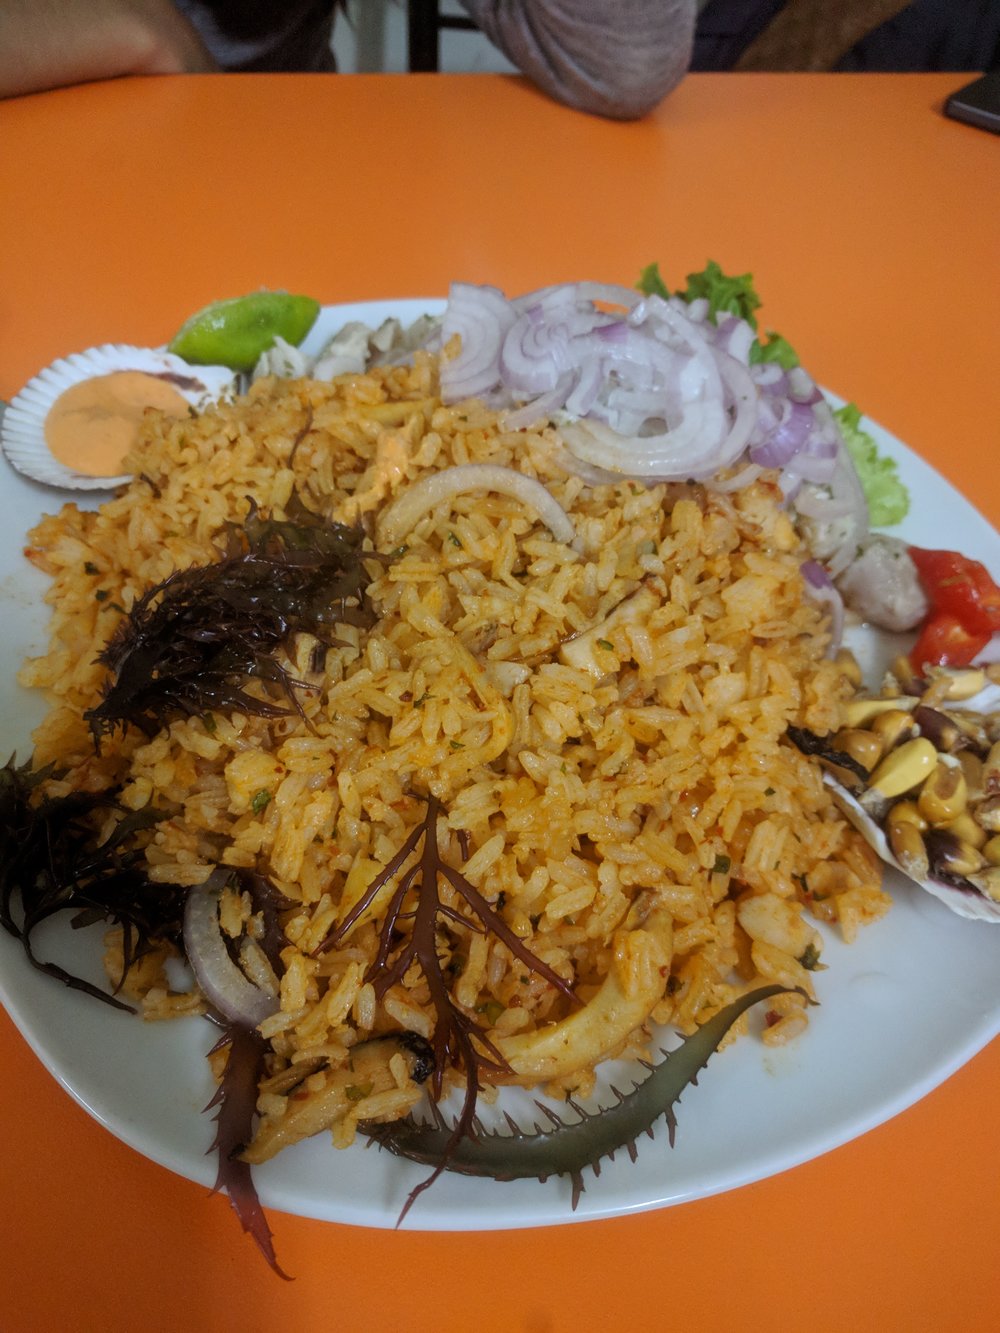 arroz de mariscos- seafood rice